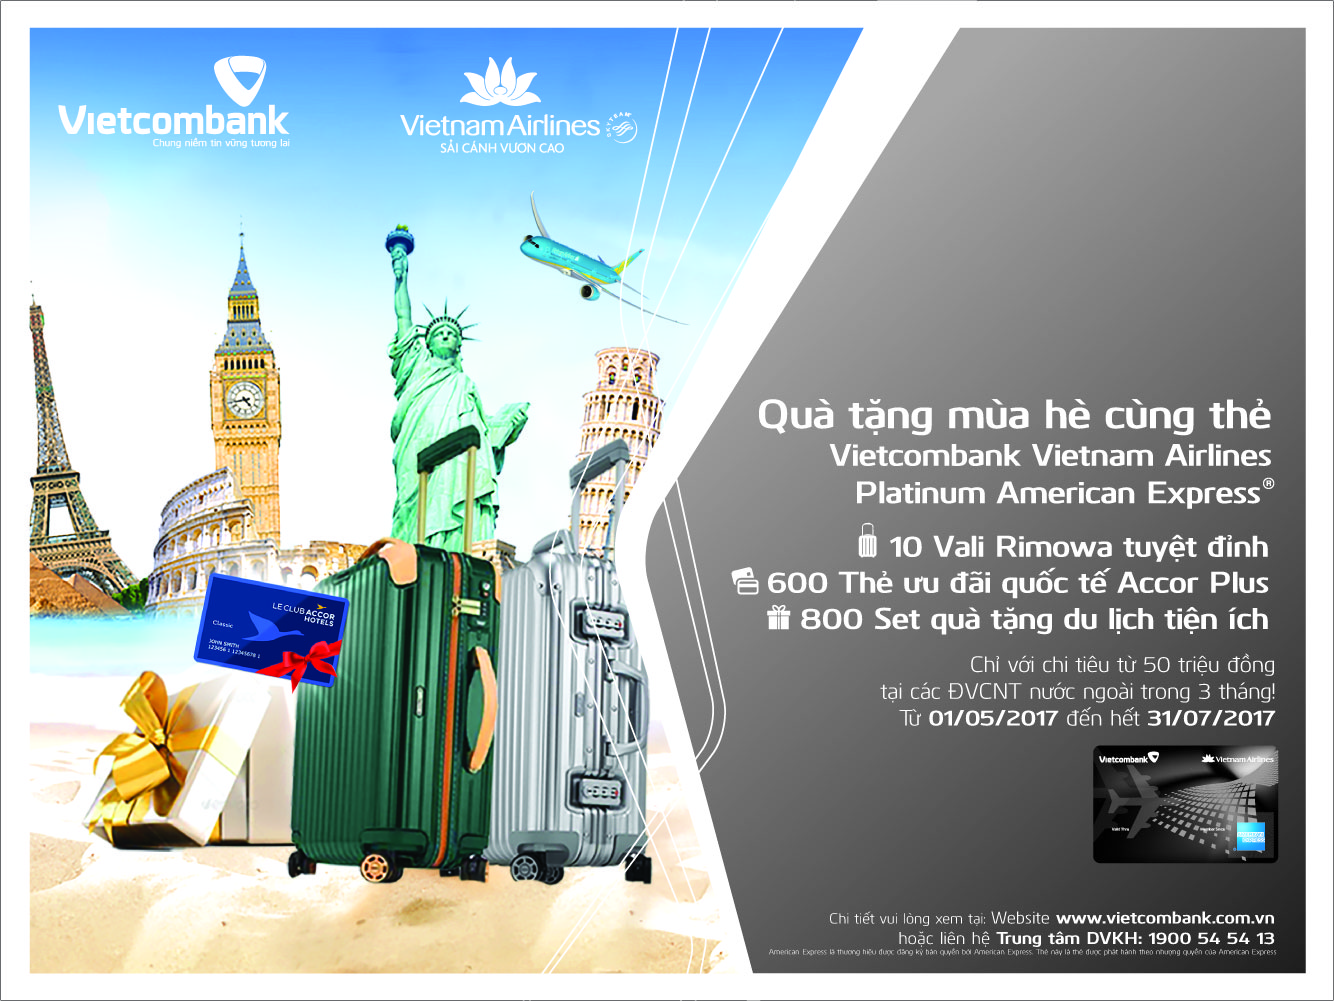 Chương trình quà tặng mùa hè cùng thẻ Vietcombank Vietnam Airlines Platinum American Express®